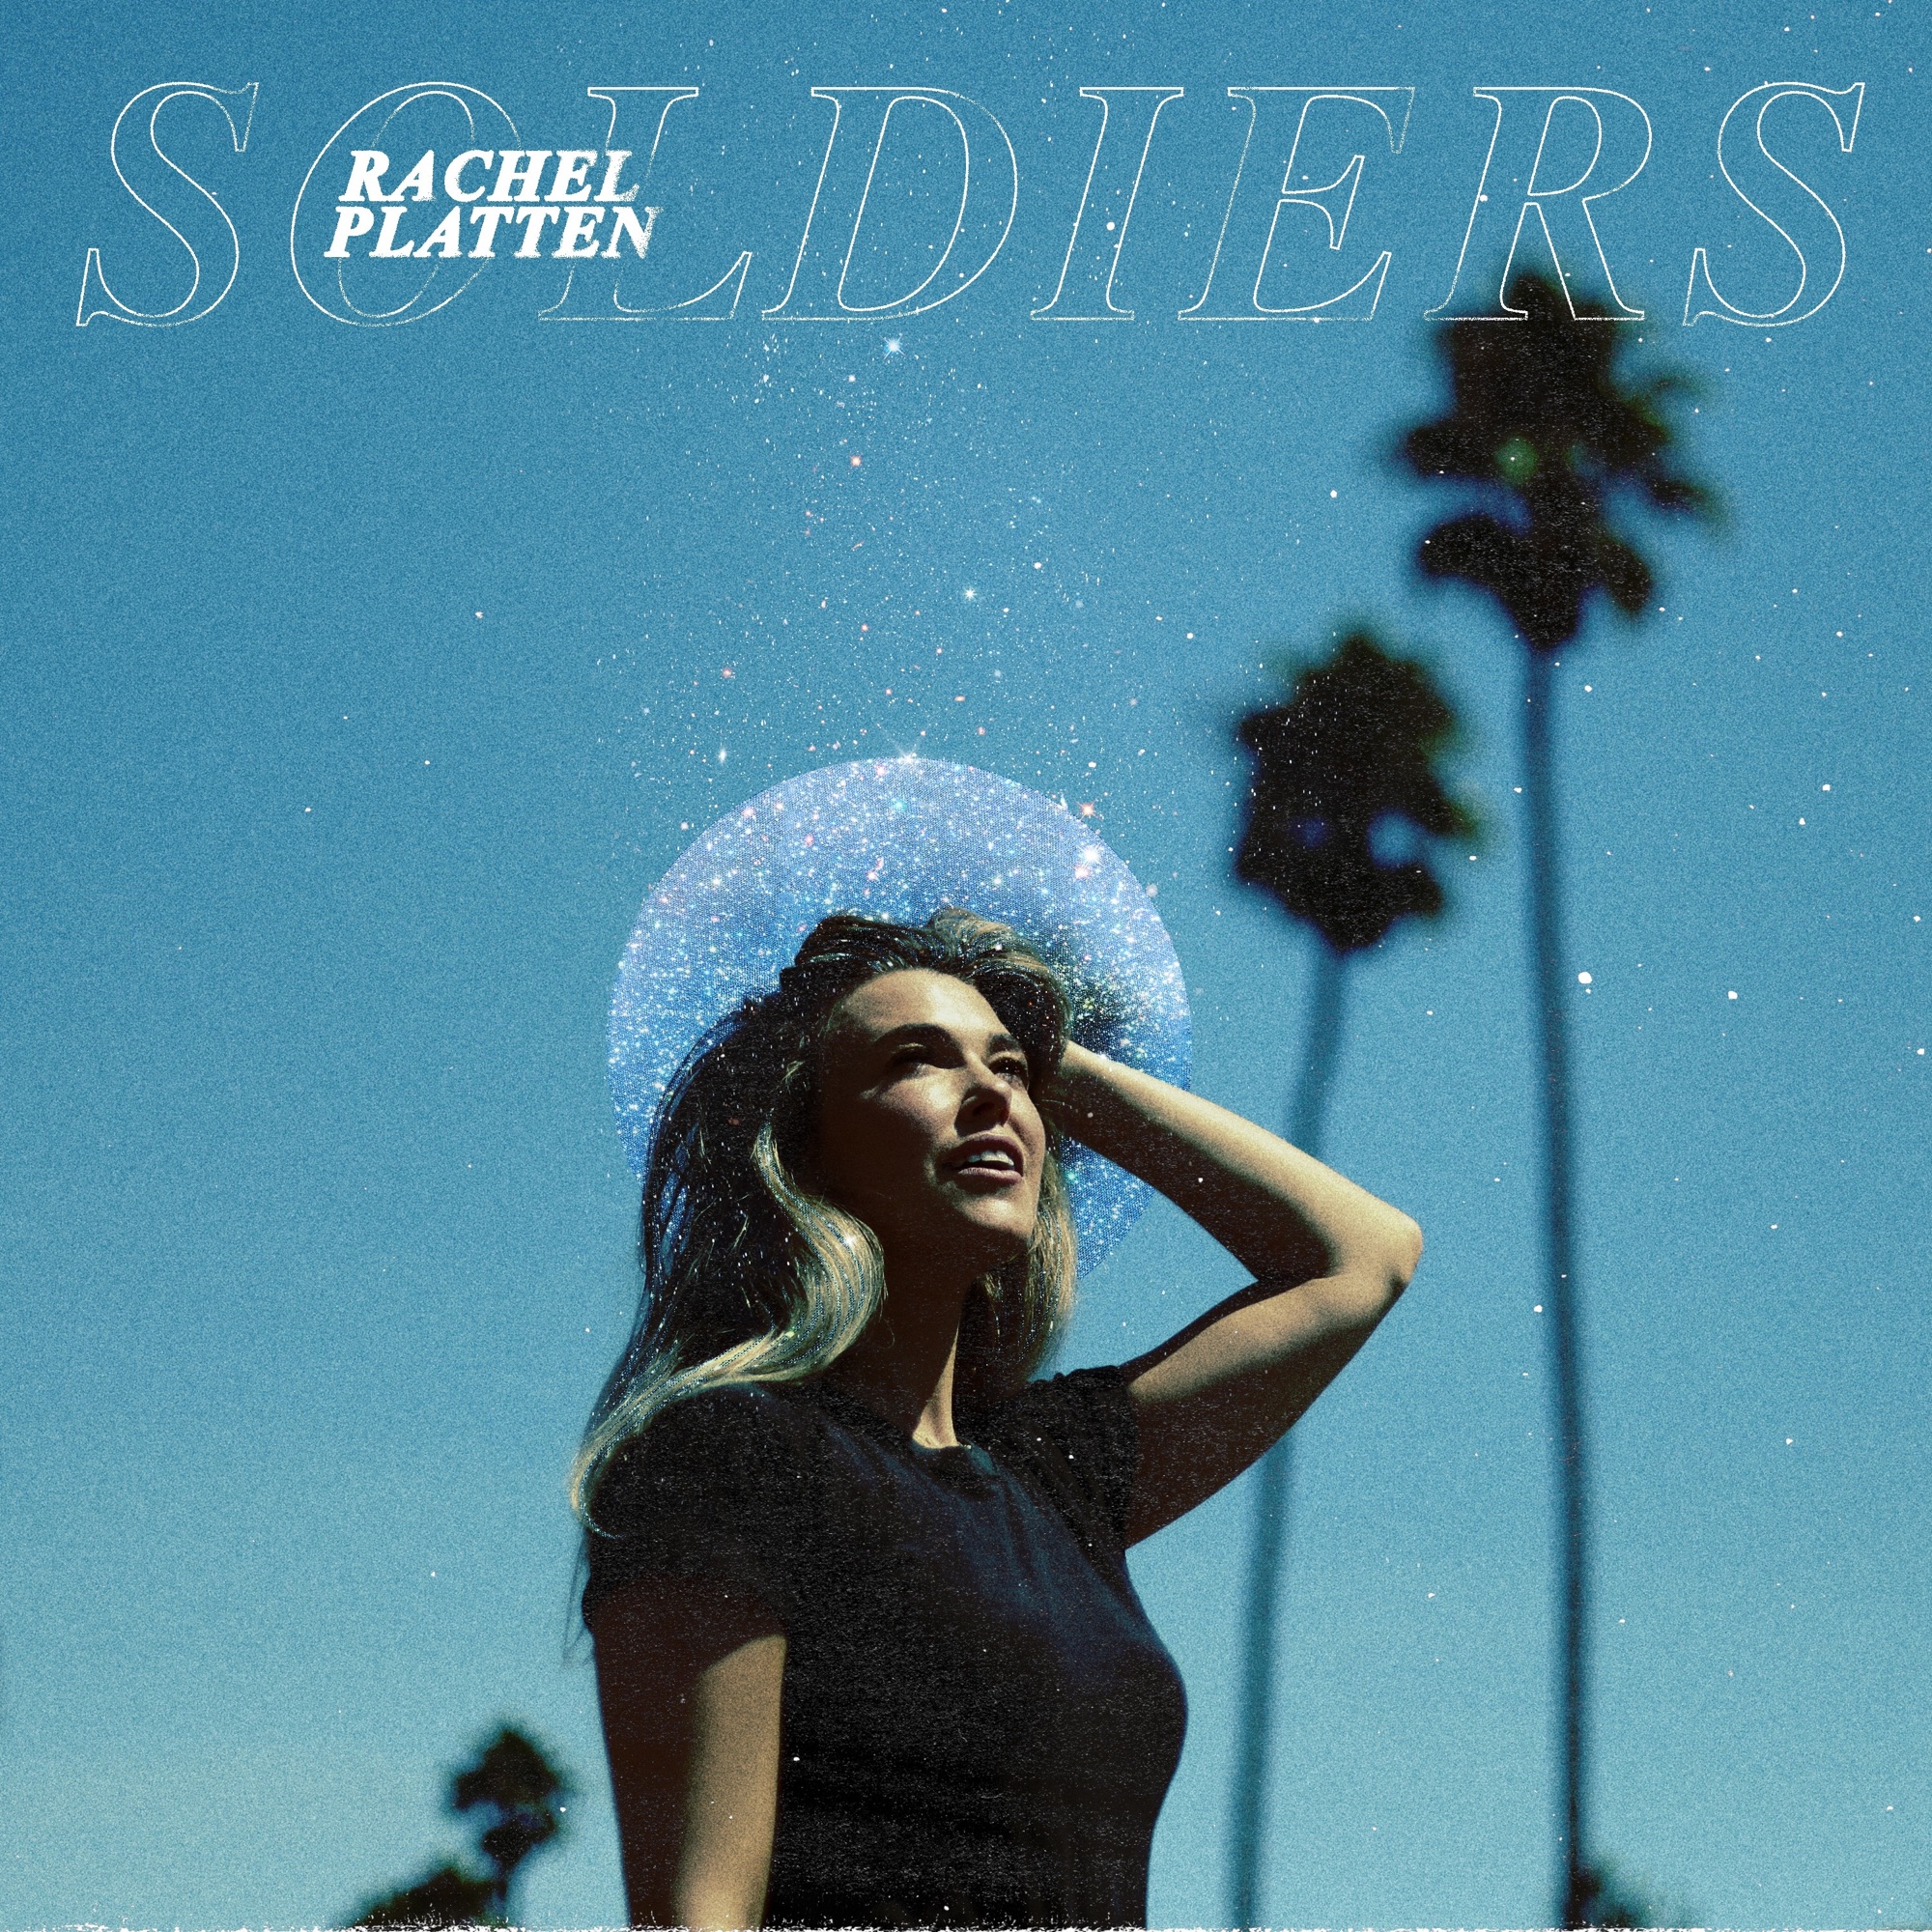 Rachel Platten - Soldiers - Single